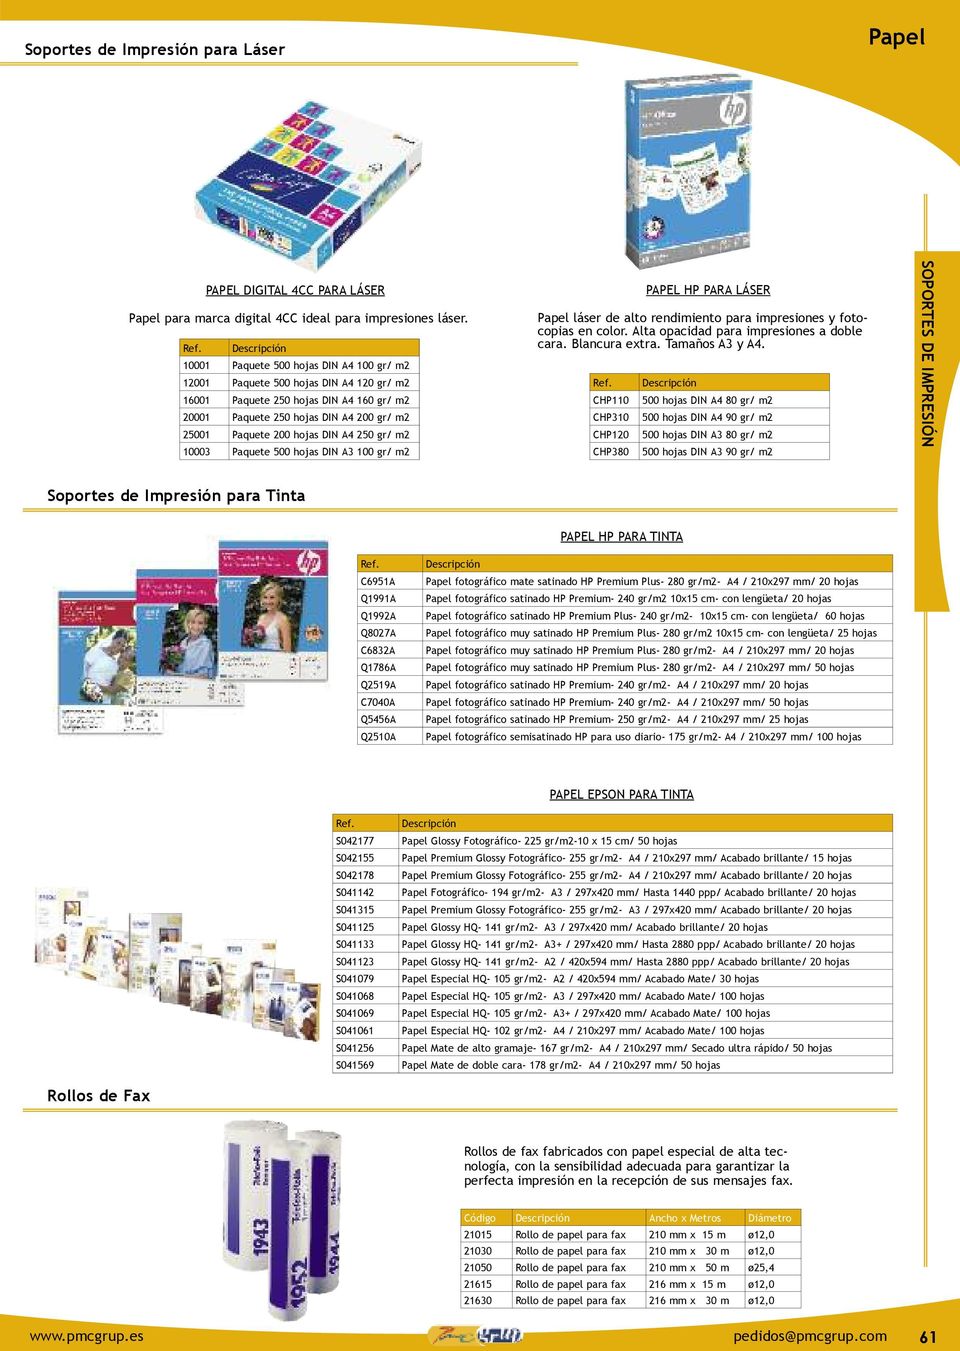 250 gr/ m2 10003 Paquete 500 hojas DIN A3 100 gr/ m2 Papel láser de alto rendimiento para impresiones y fotocopias en color. Alta opacidad para impresiones a doble cara. blancura extra.